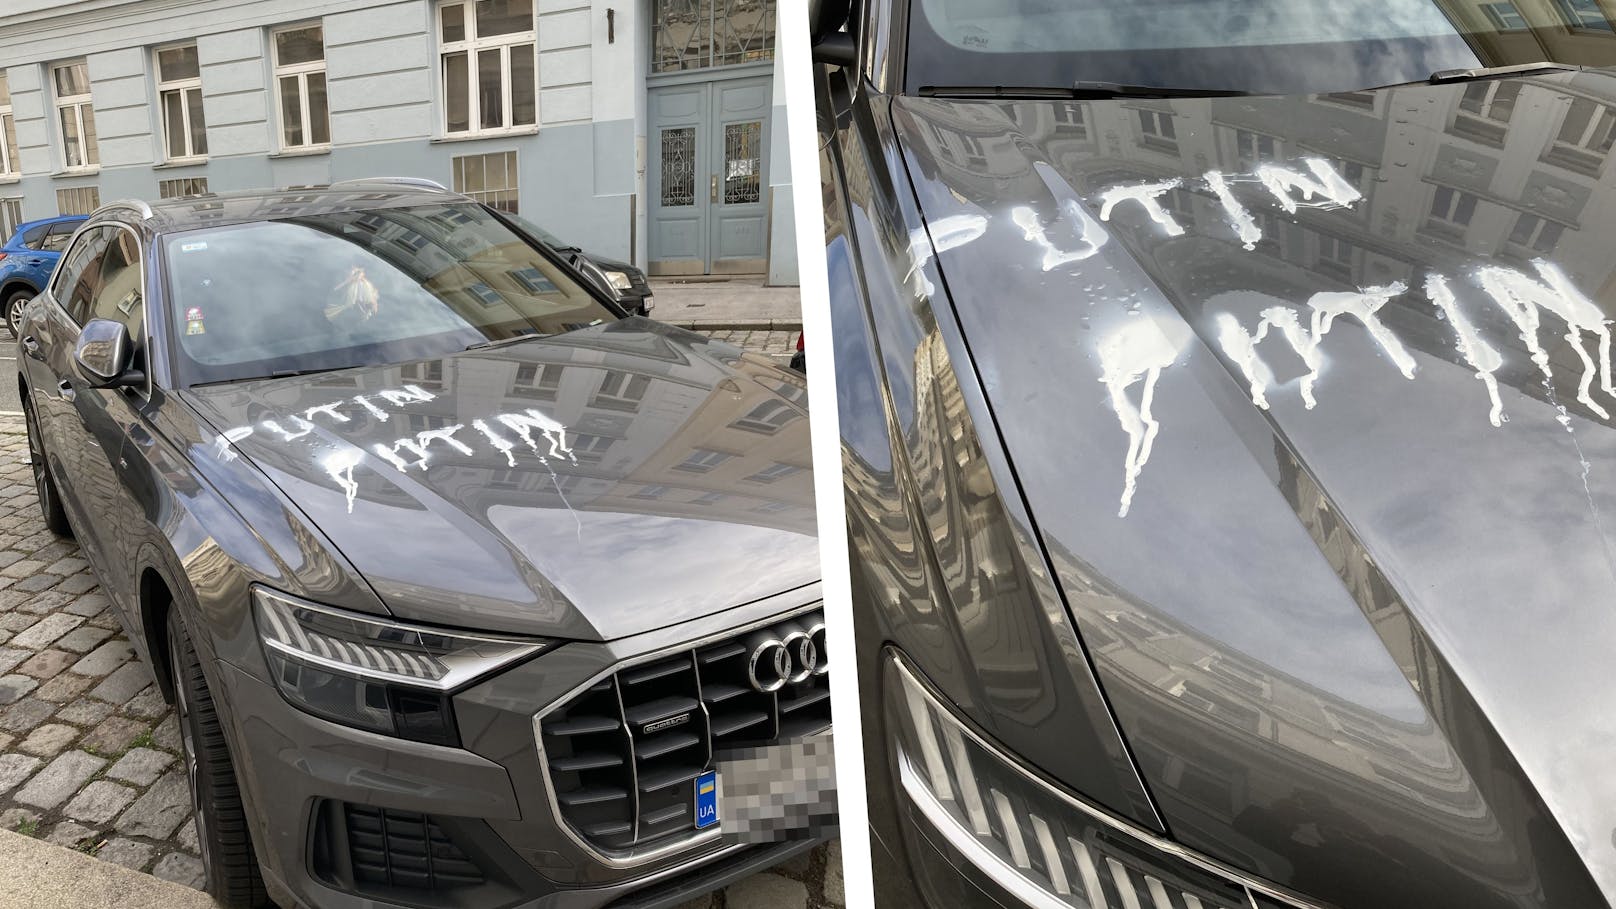 Das ukrainische Auto wurde übers Wochenende mit nicht abwaschbarer Farbe beschmiert.